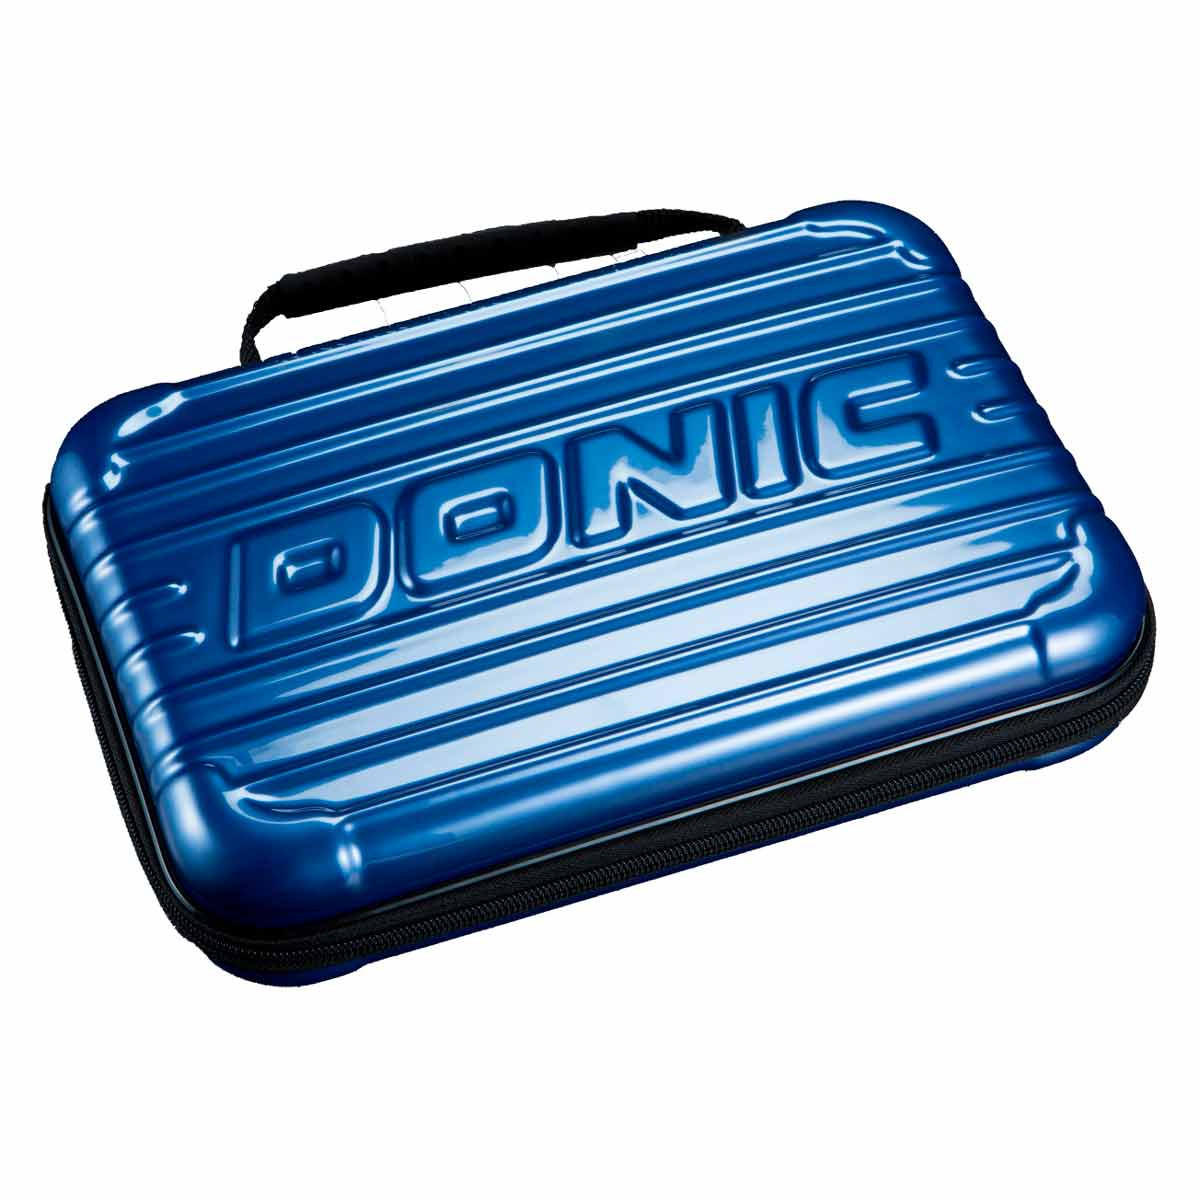 Donic Racket case Hardcase blue